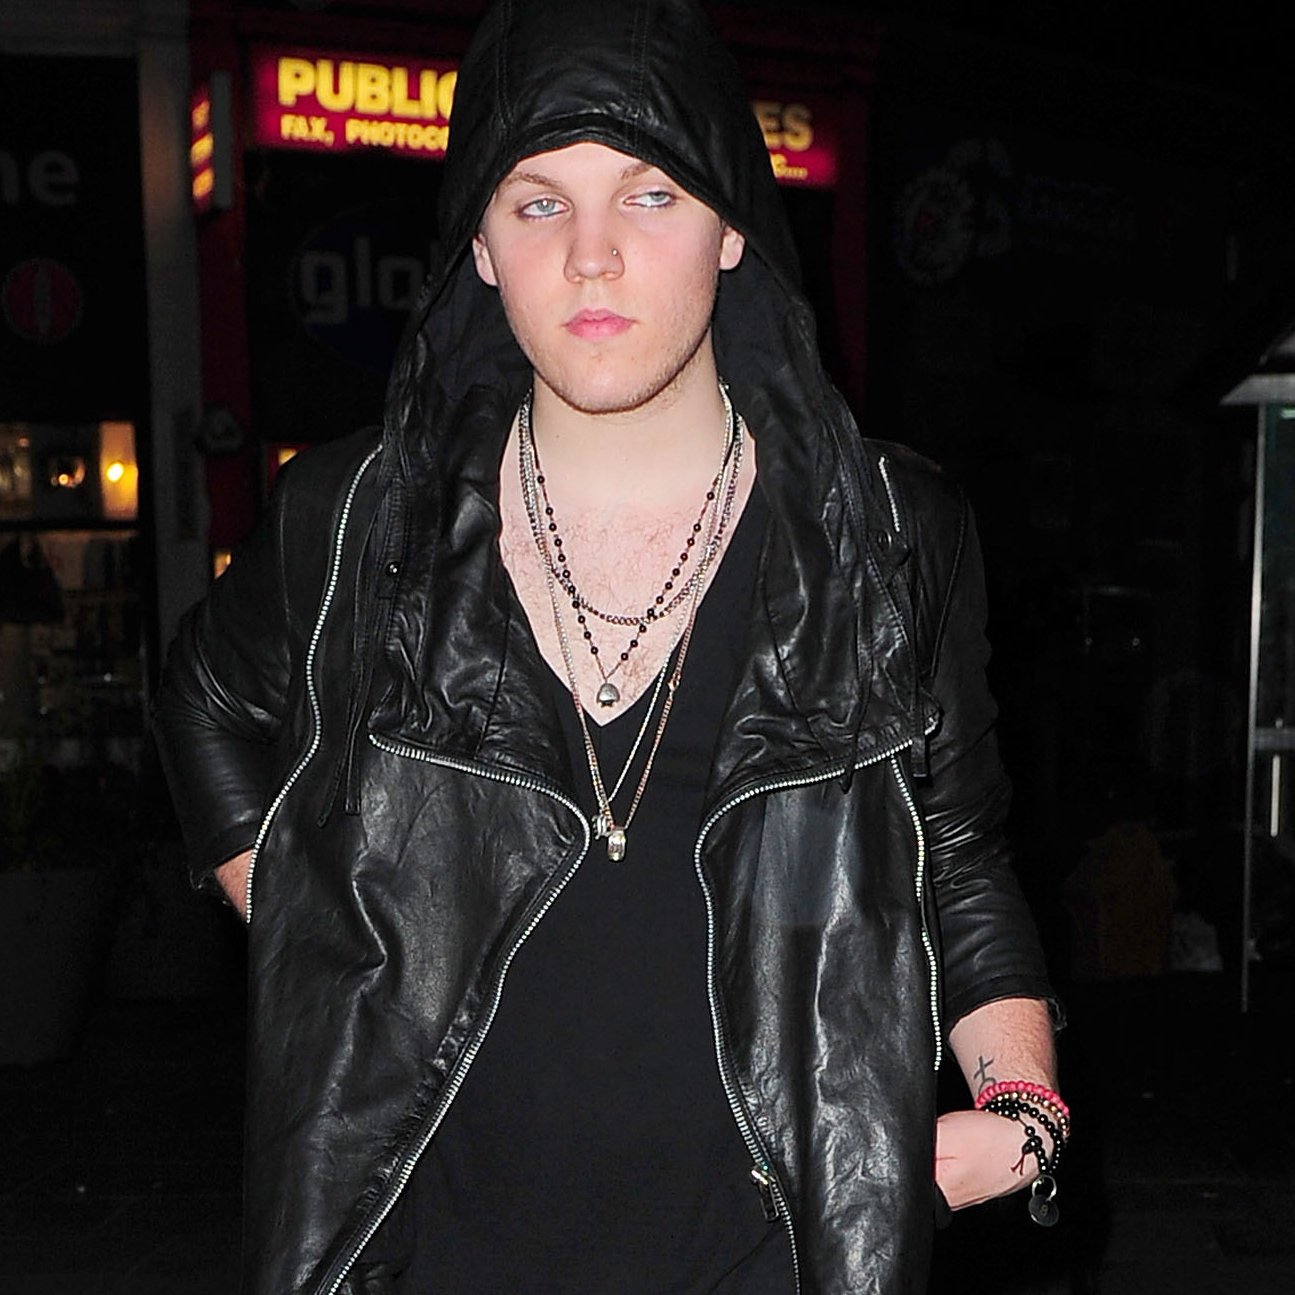 Elvis Presley's grandson Benjamin Keough leaves Boujis nightclub at 3:30 am in a leather jacket in London